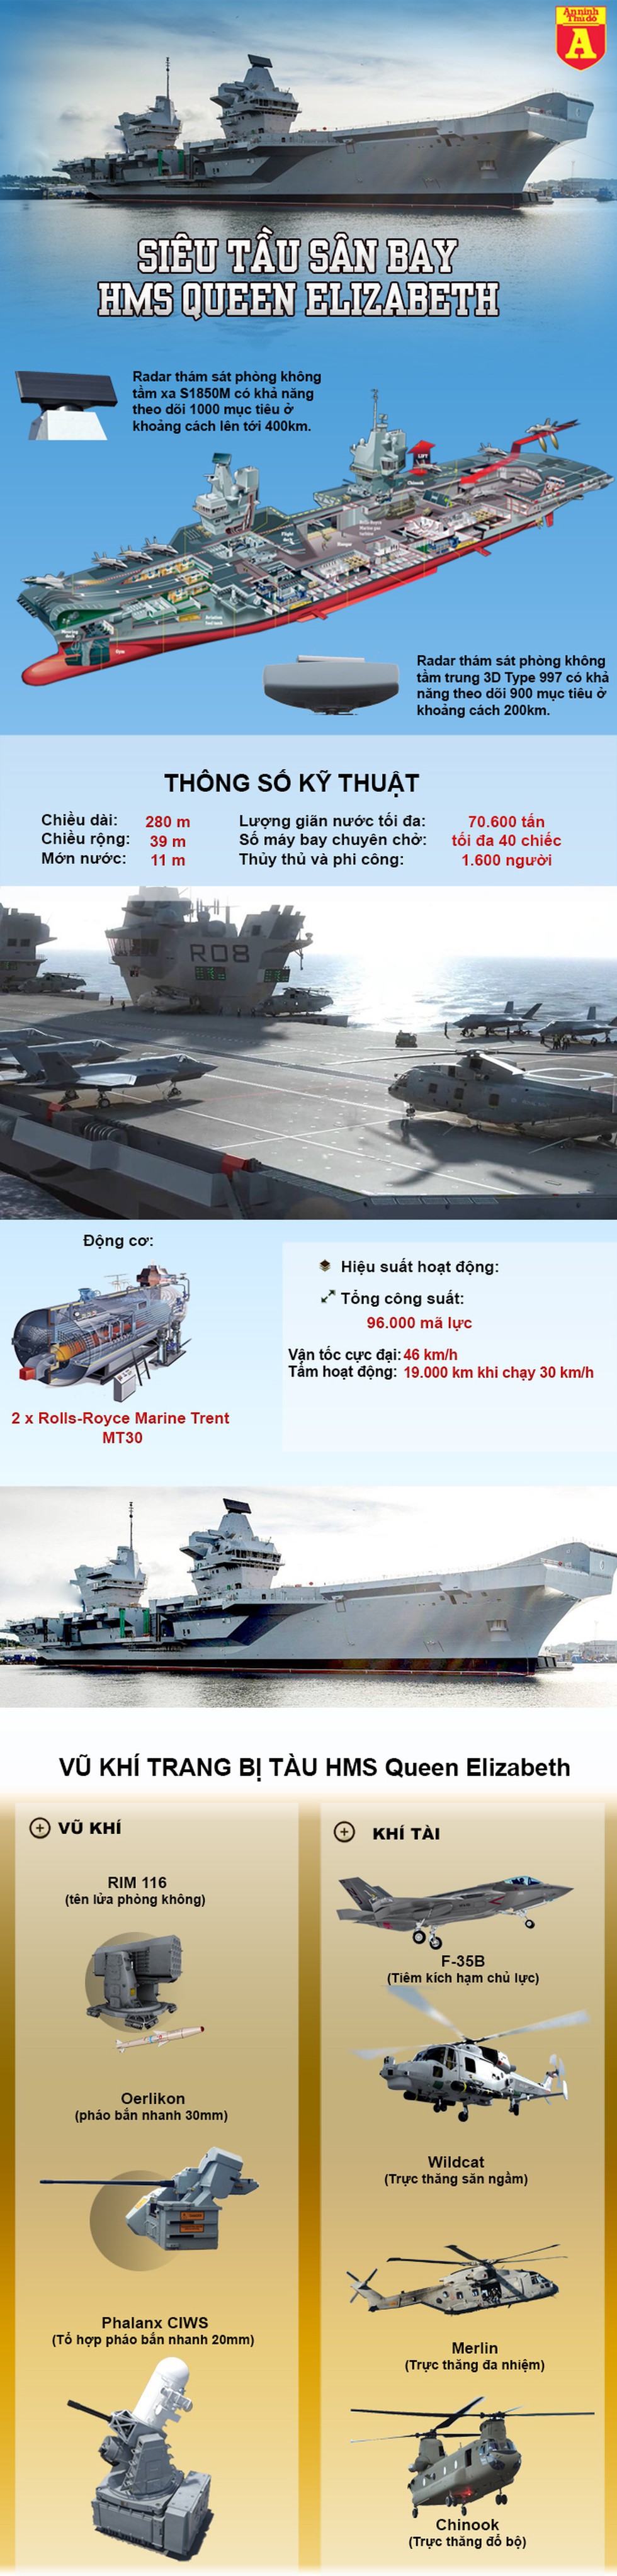 [Infographic] Phớt lờ cảnh báo từ Trung Quốc, Anh đem tàu sân bay để bảo đảm tự do hàng hải tại biển Đông - Ảnh 1